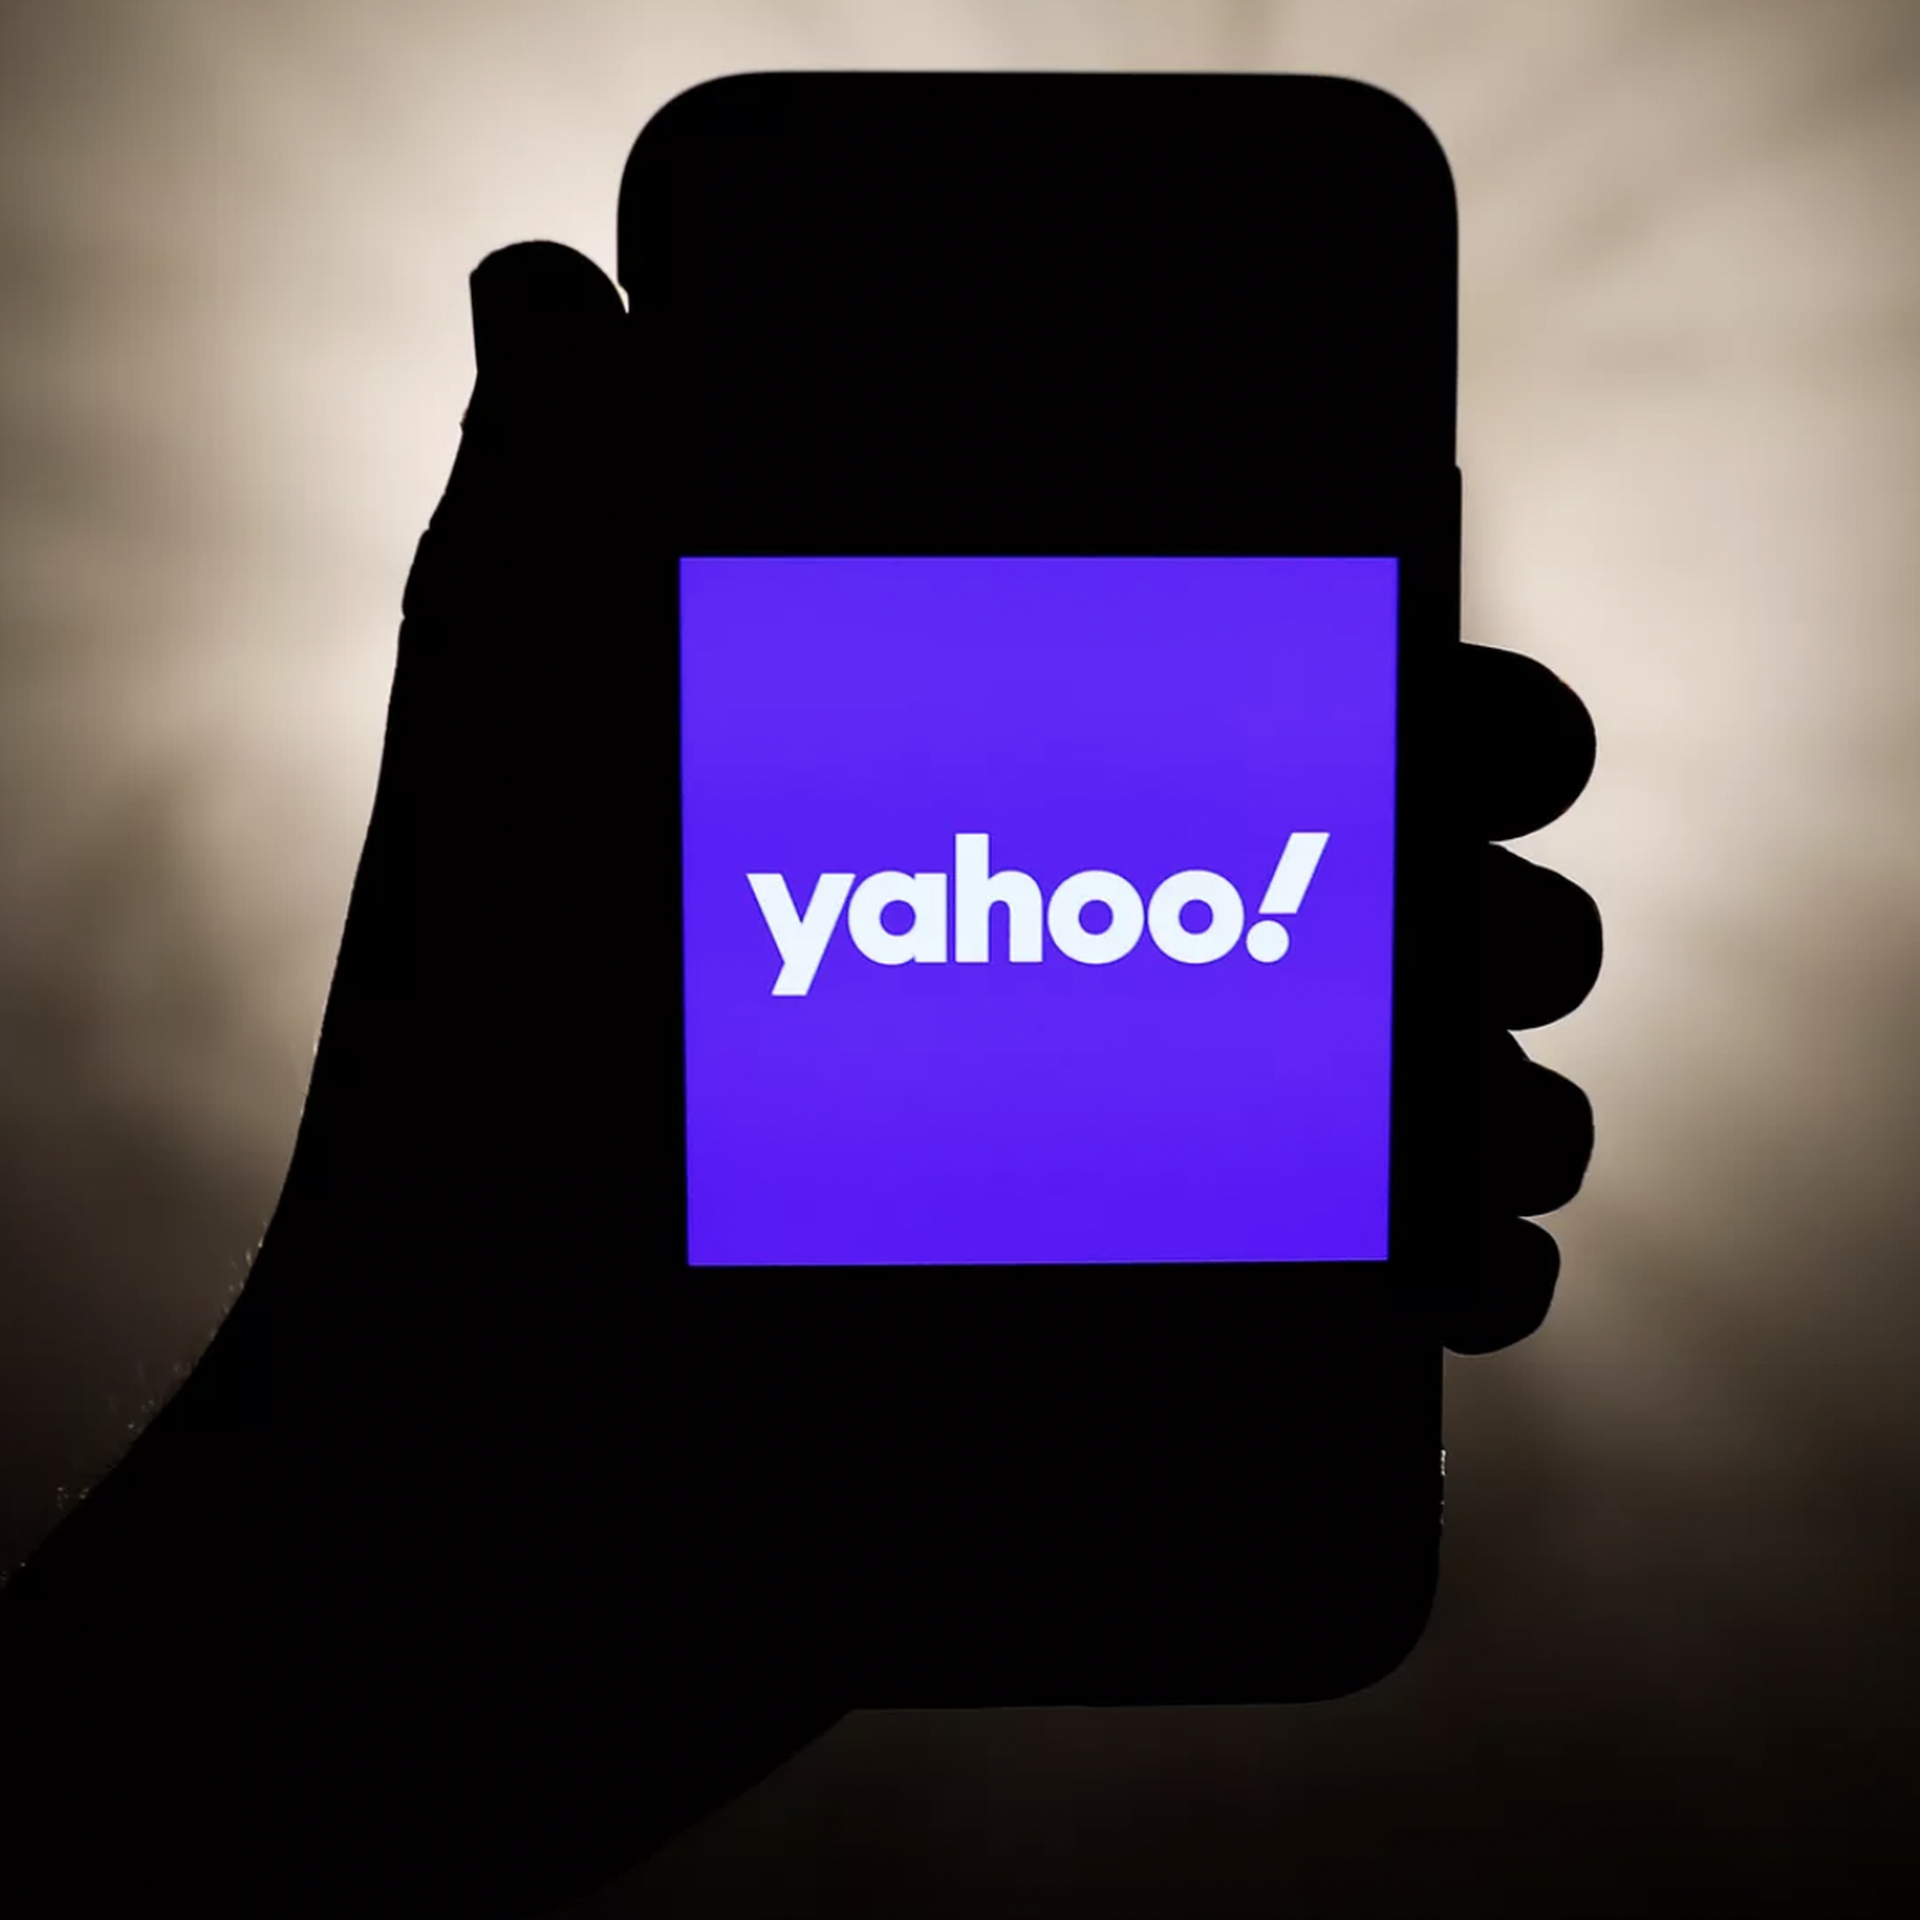 Posso entrar em contato com o Yahoo por telefone?